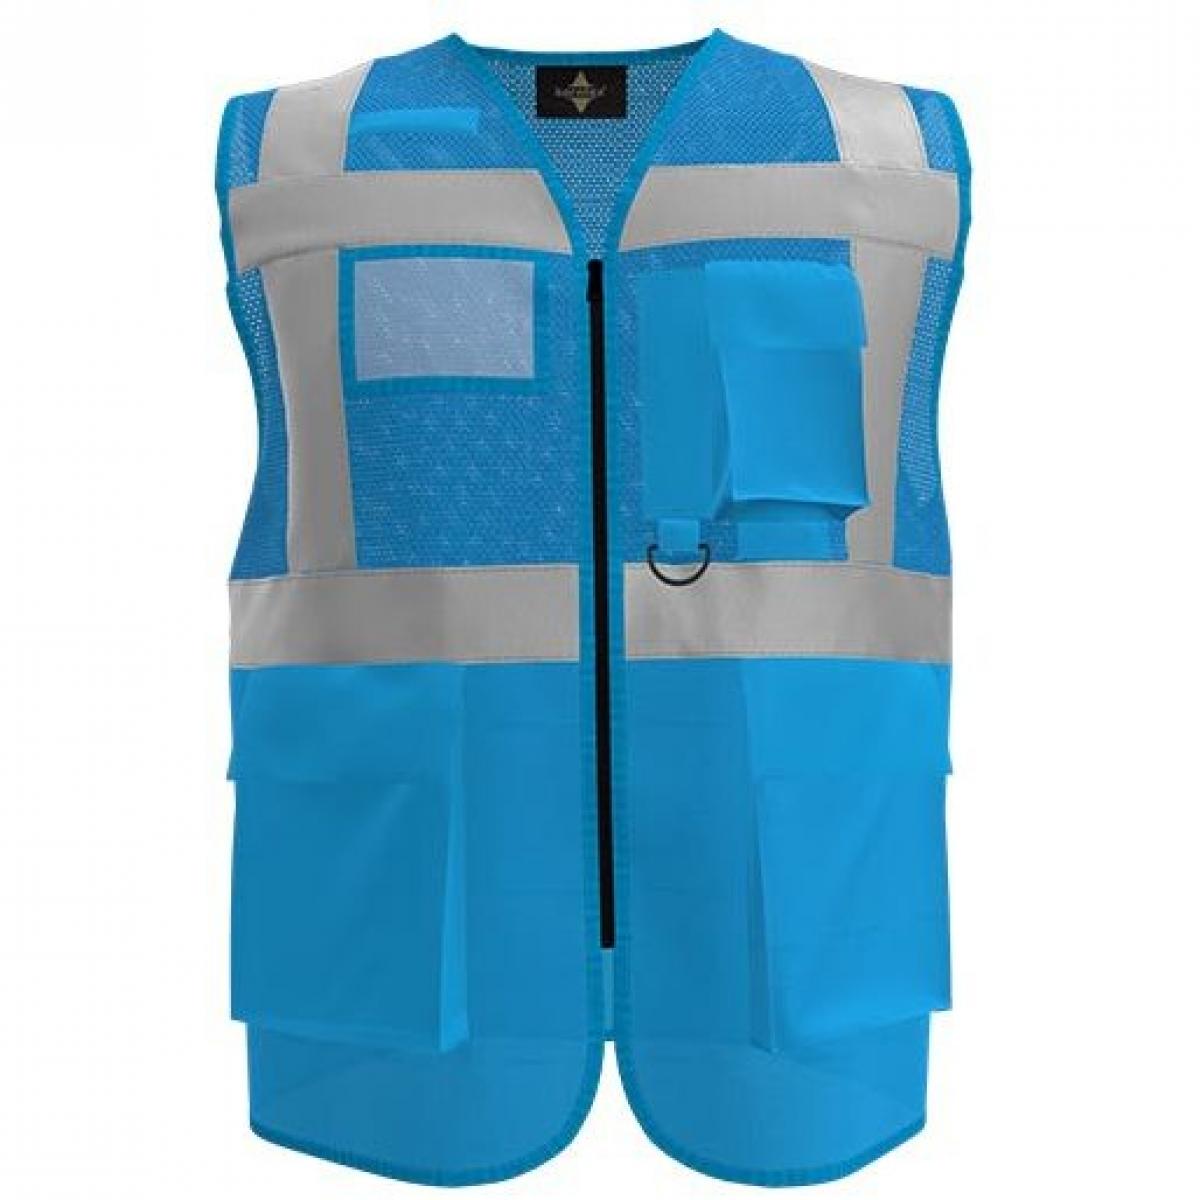 Hersteller: Korntex Herstellernummer: KXEXQ Artikelbezeichnung: Multifunkitons-Warnweste Mesh Multifunction Vest Farbe: Sky Blue